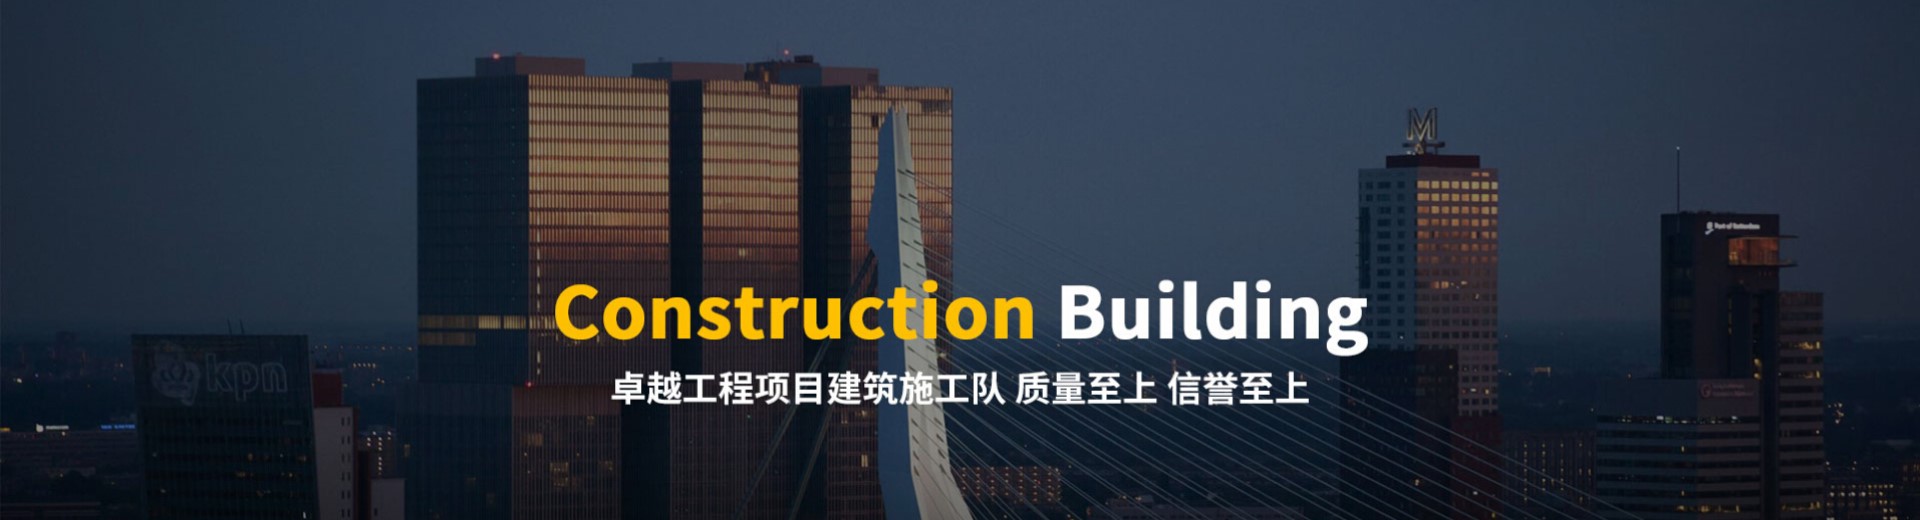 建筑施工公司响应式网站模板案例